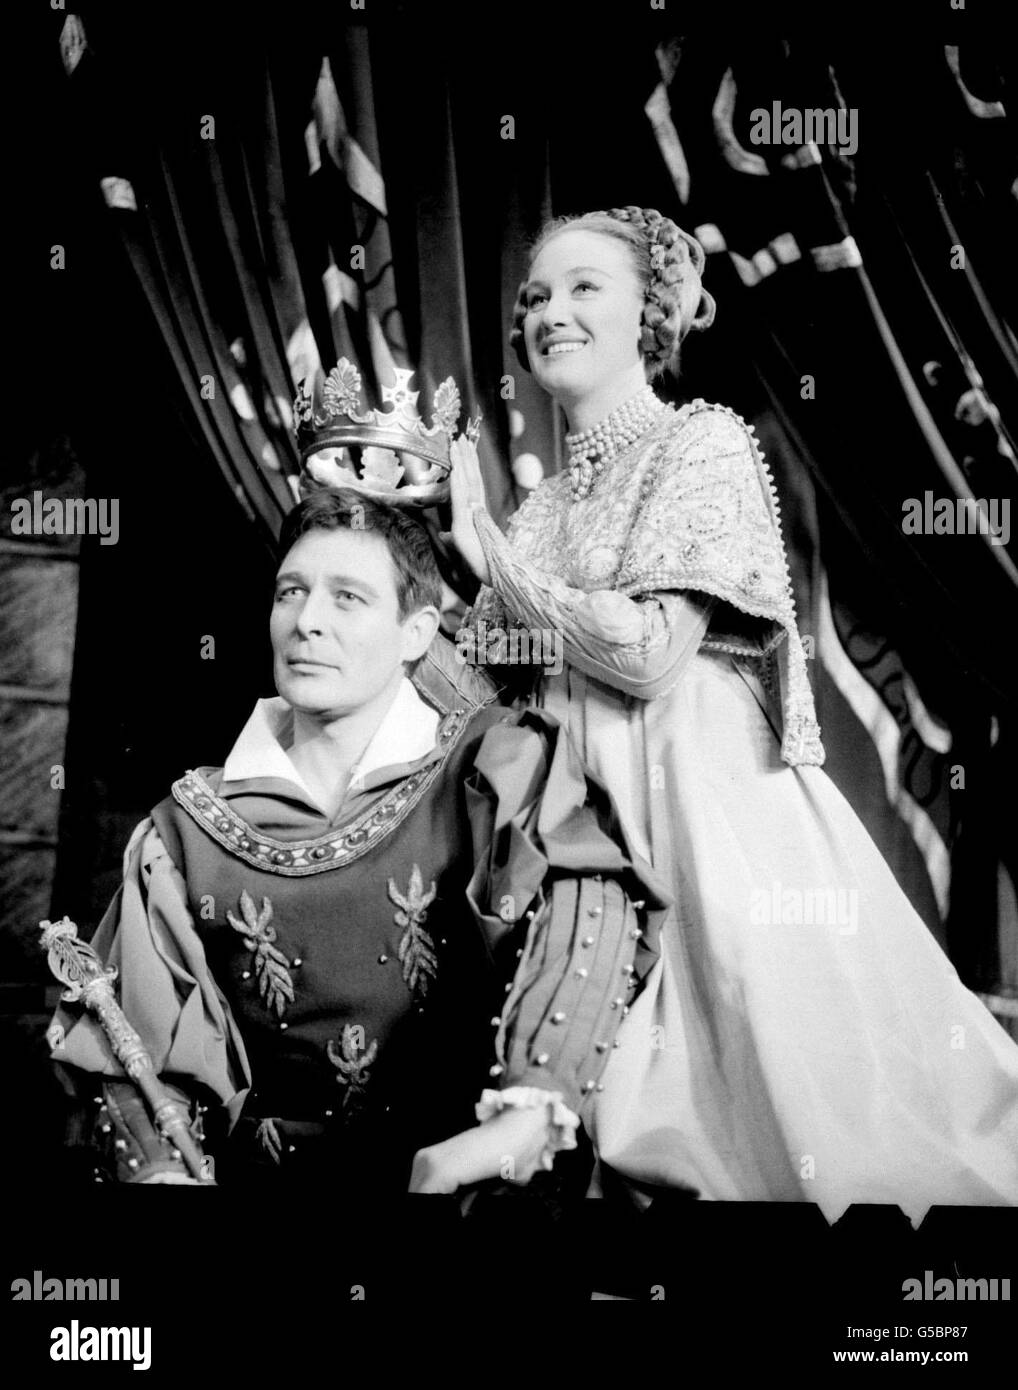 L'acteur Paul Daneman jouant le roi Arthur dans la comédie musicale Camelot au Theatre Royal, Drury Lane, Londres étant couronné par la dame Elizabeth Larner jouant la reine Guinevere. Banque D'Images